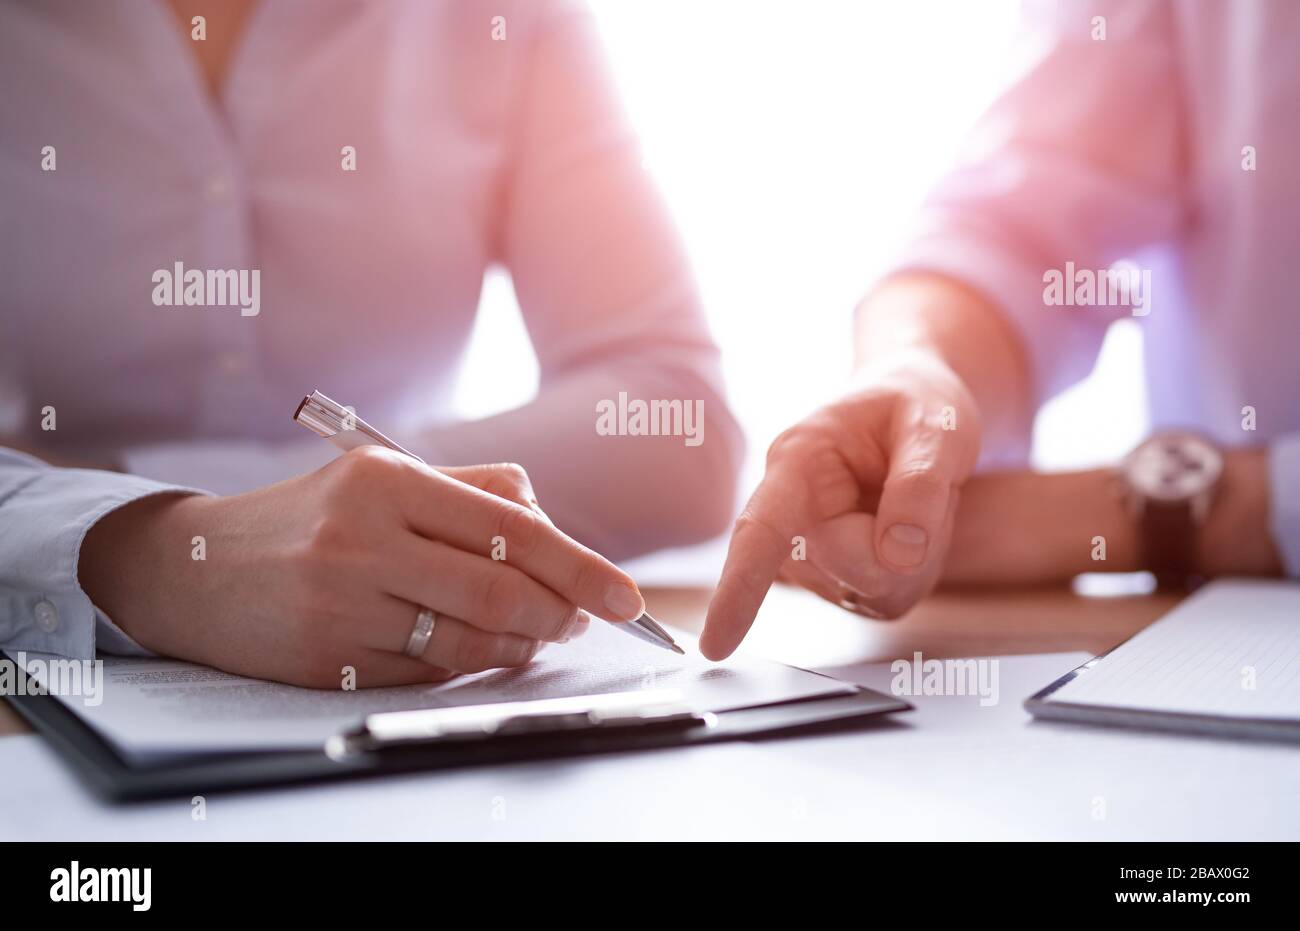 Empresarios que negocian un contrato. Manos humanas trabajando con documentos en el escritorio y firmando el contrato. Foto de stock